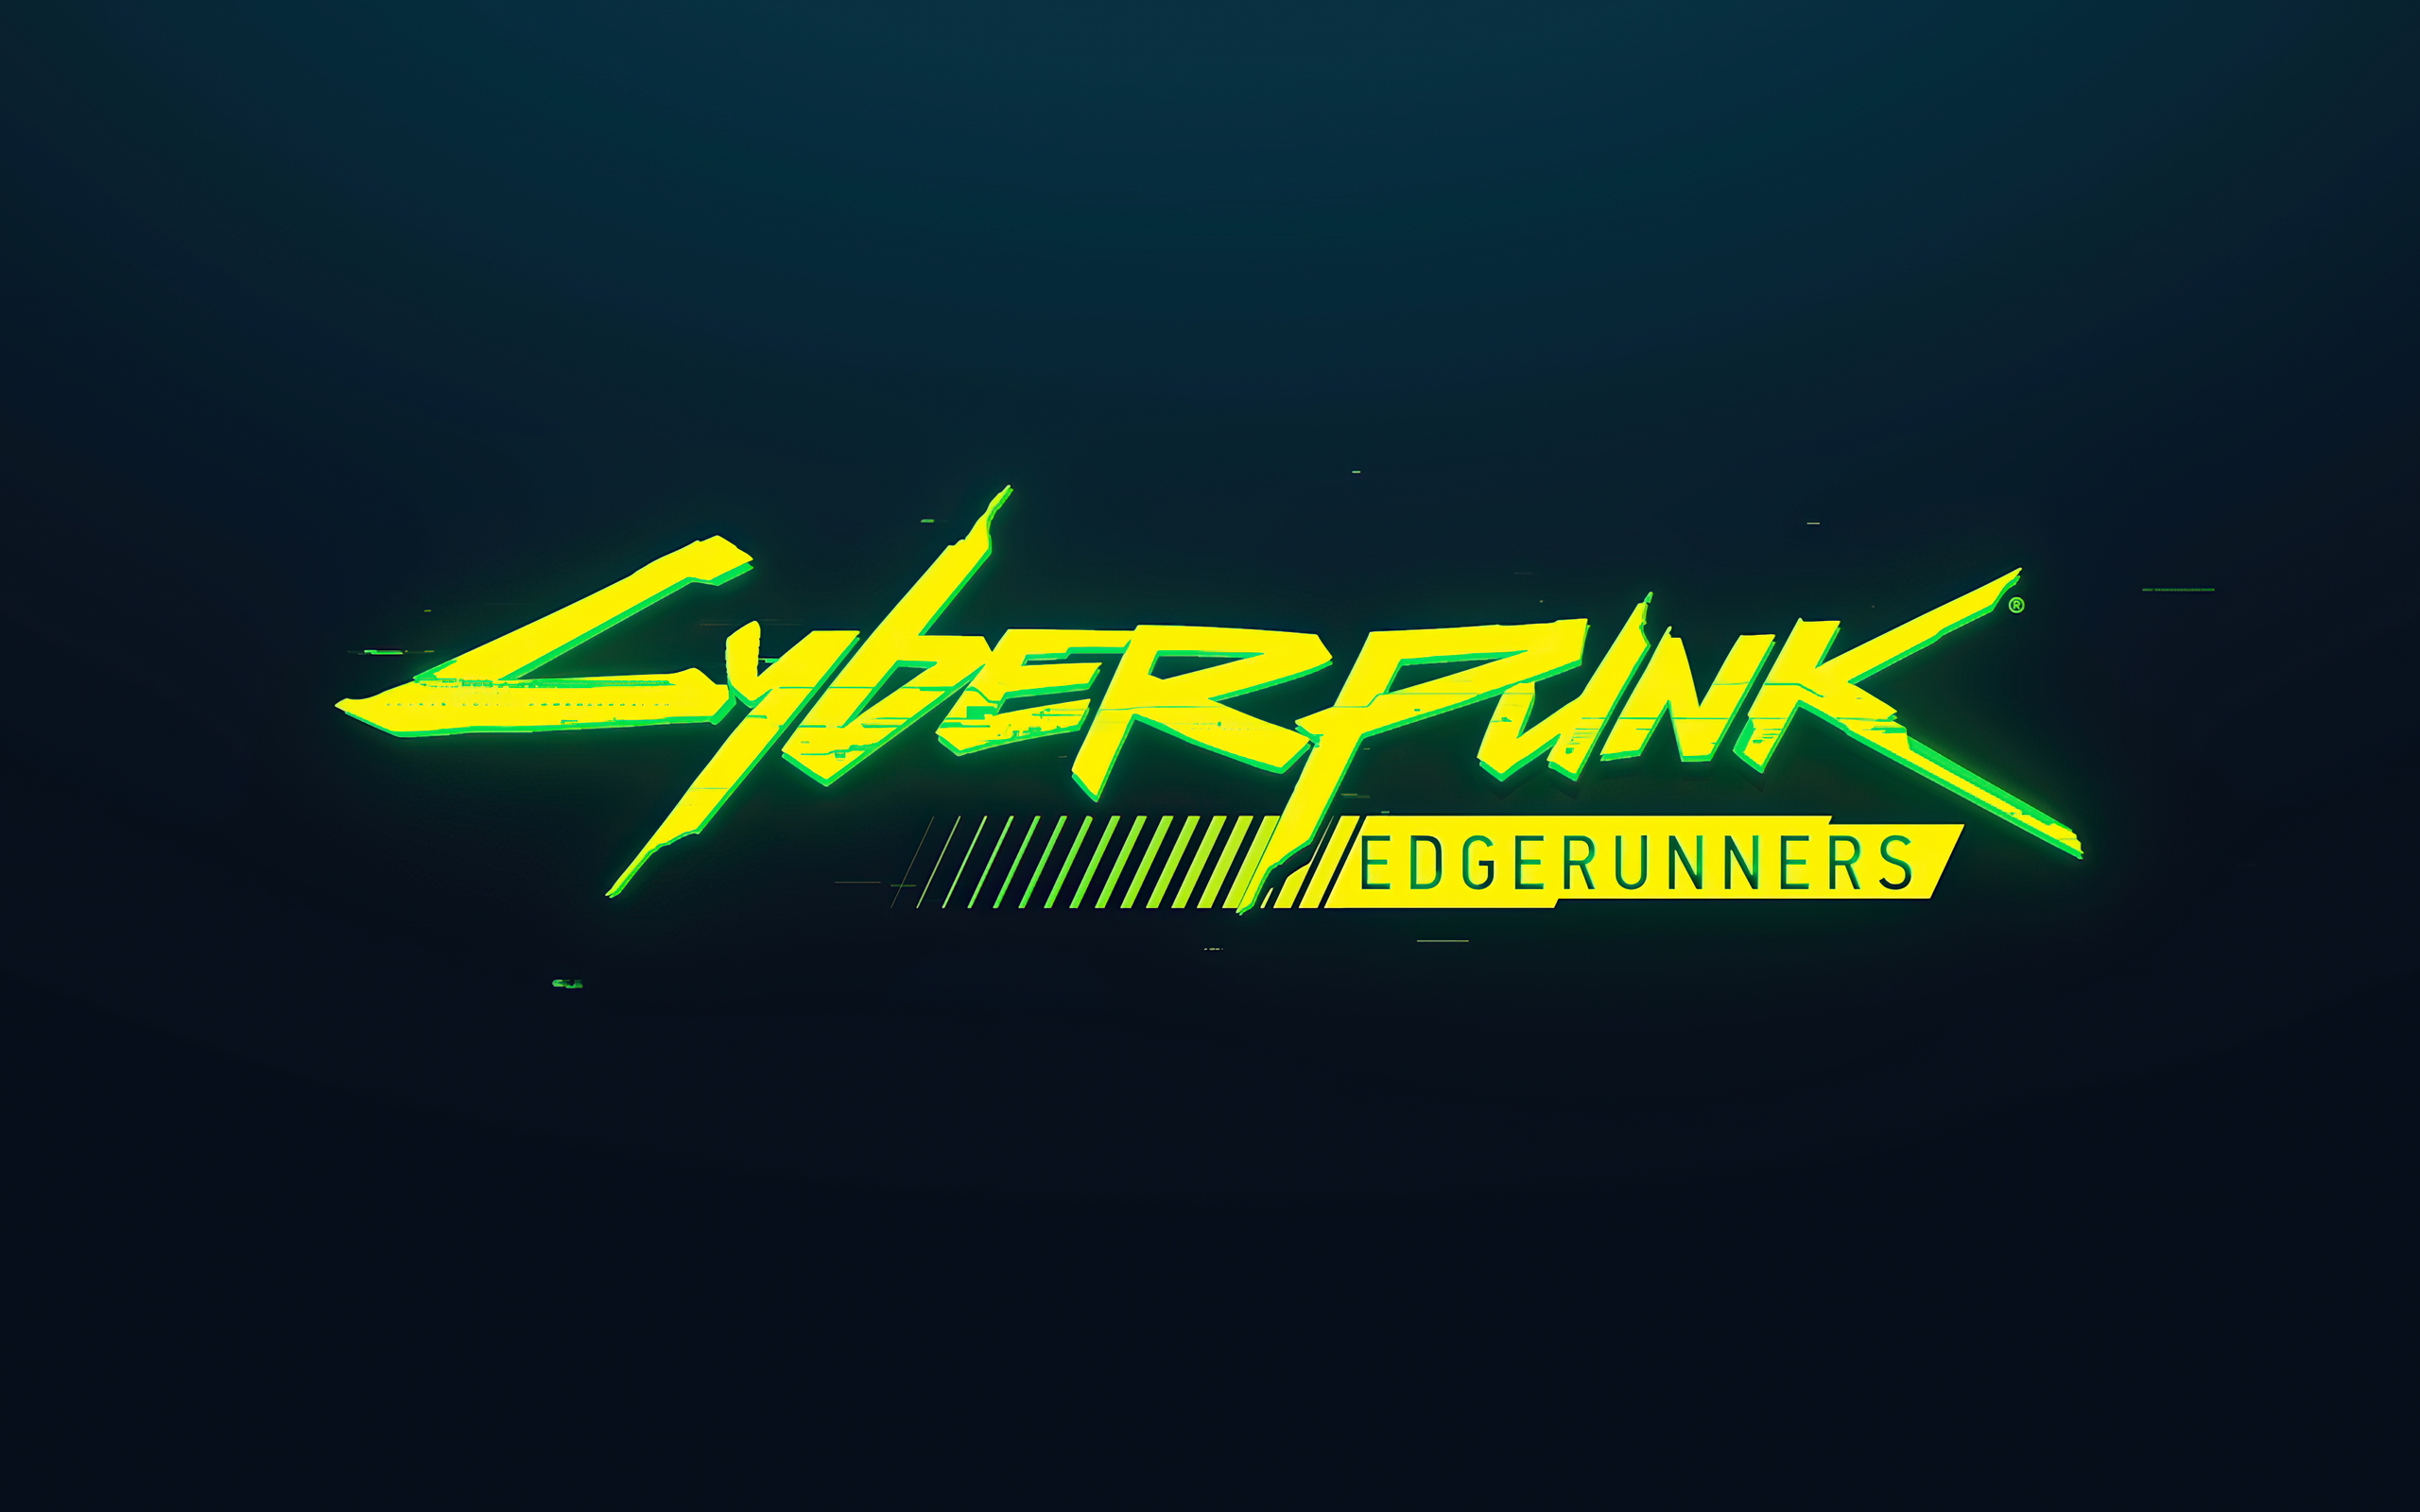 2560x1600 Netflix Cyberpunk Edgerunners Logo 2560x1600 Resolution HD 4k